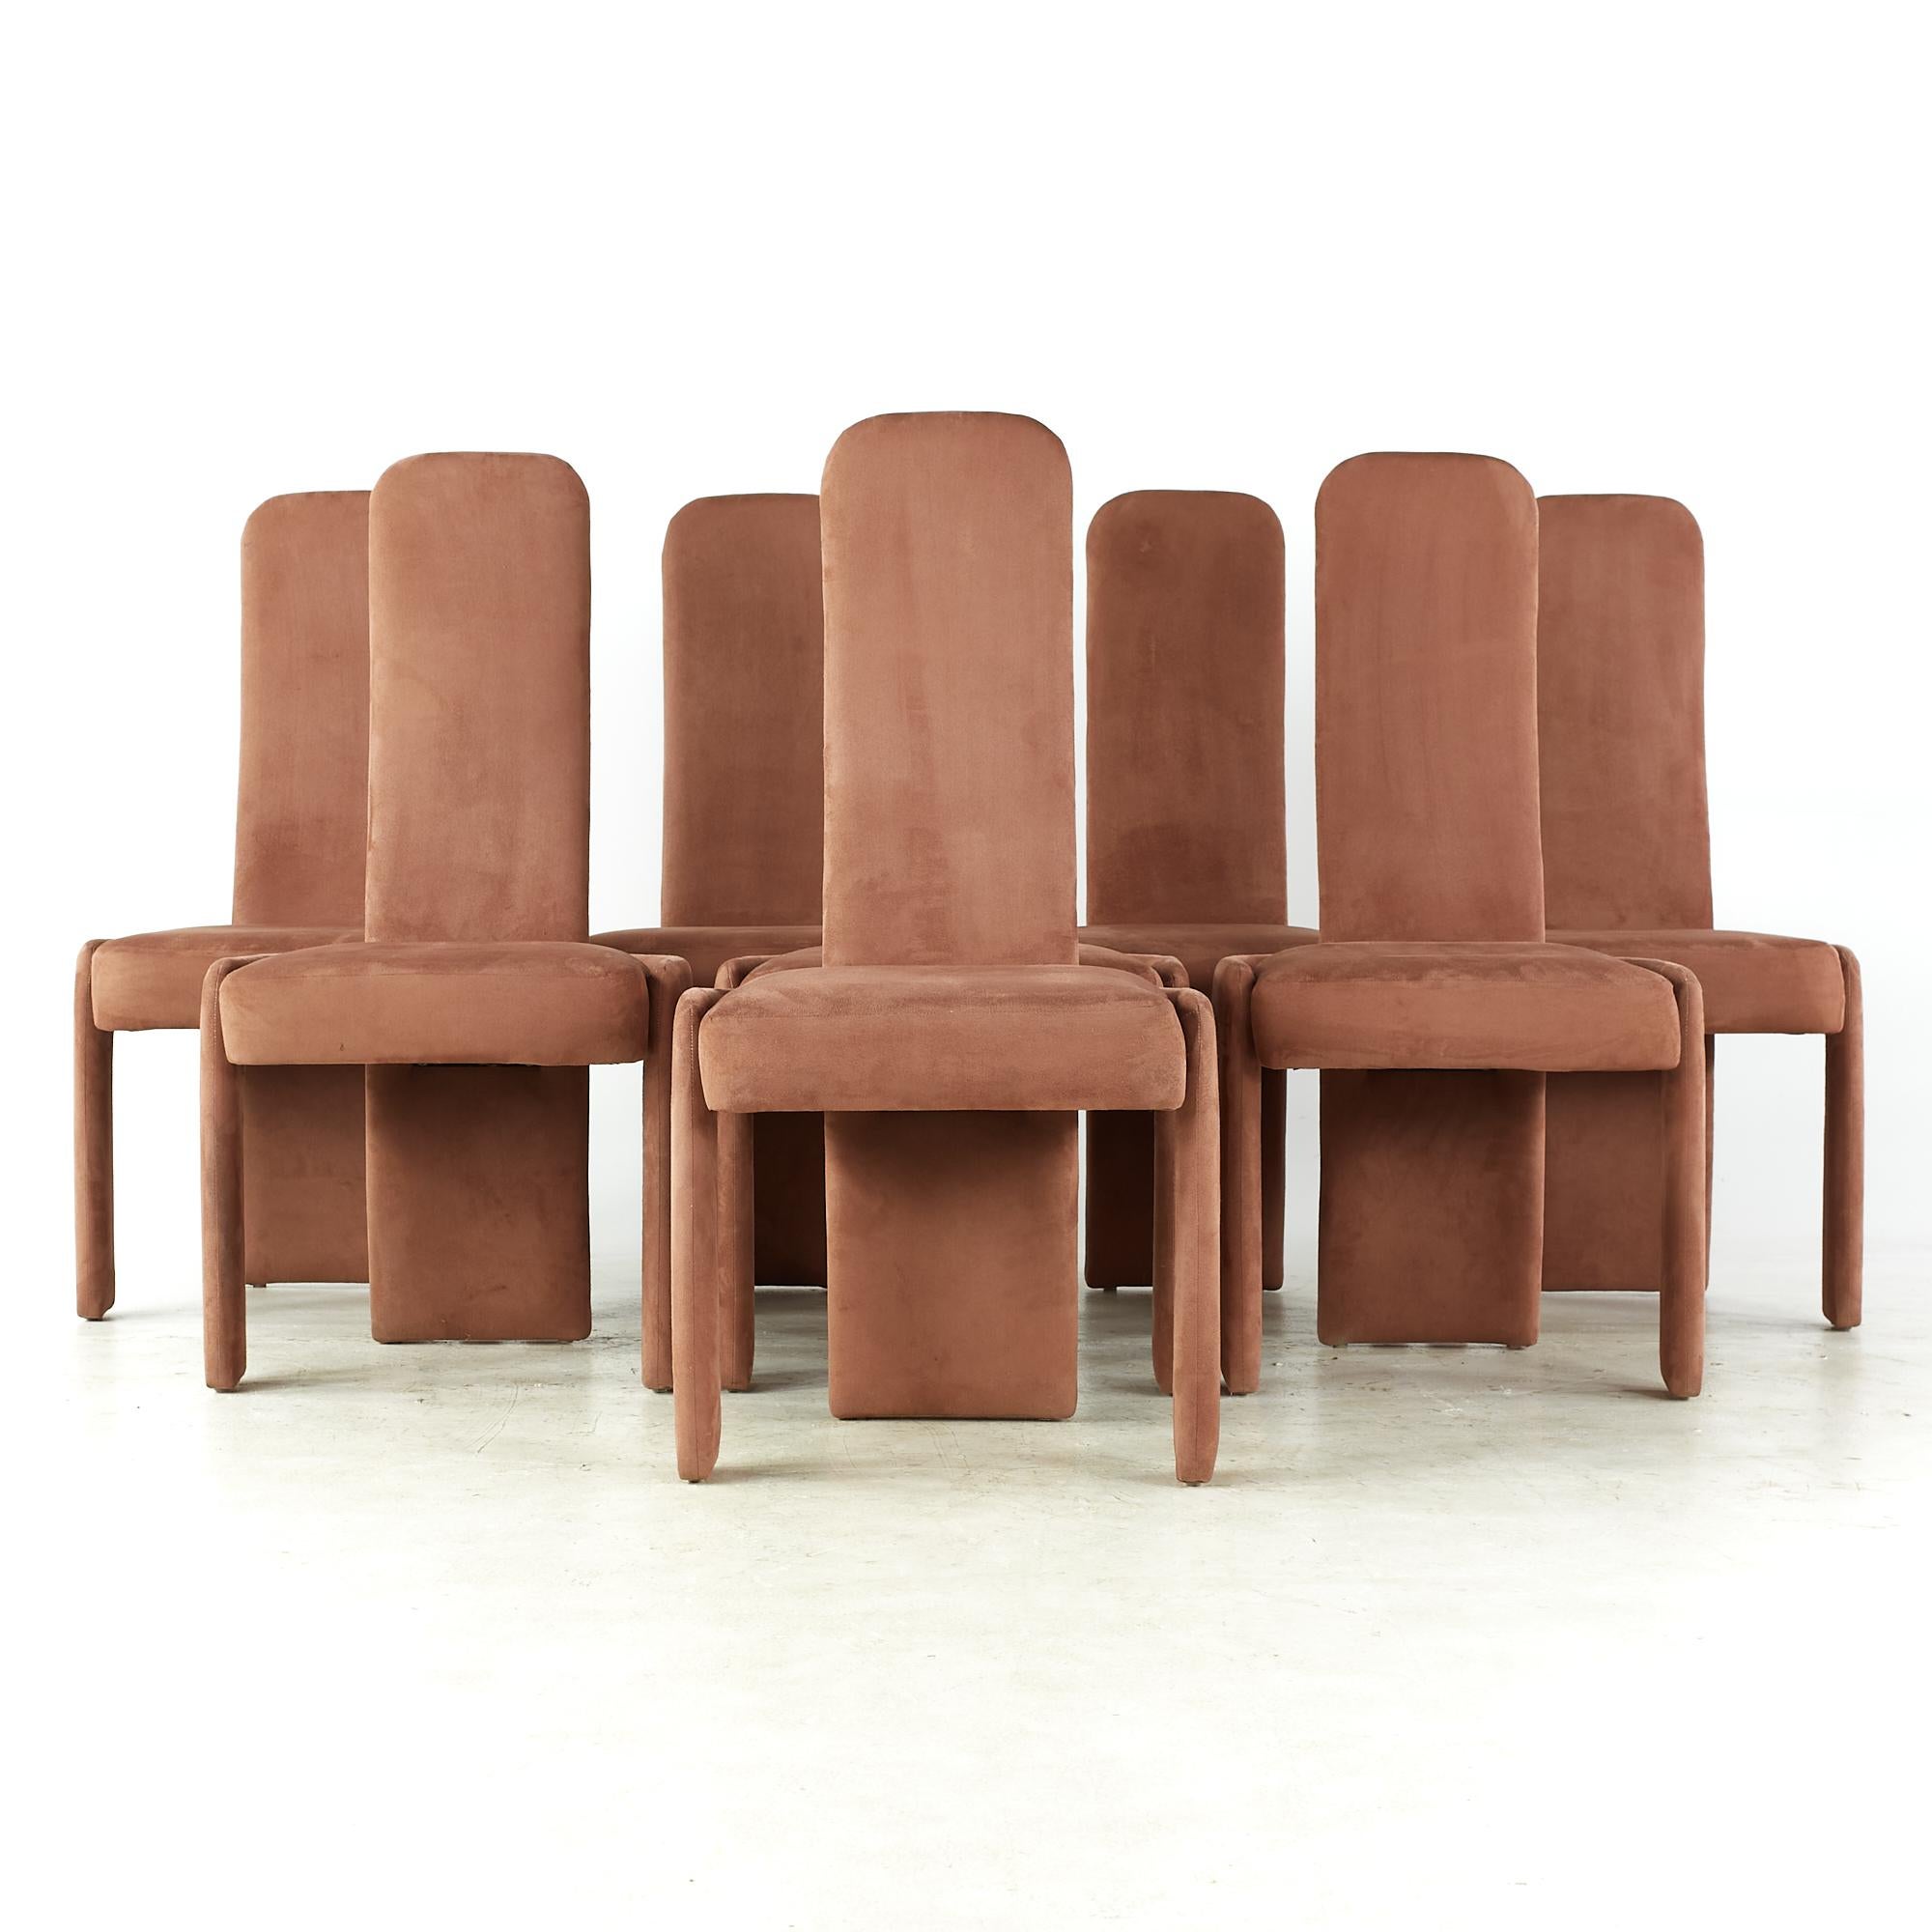 Esszimmerstühle von Pierre Cardin aus der Mitte des Jahrhunderts – 8er-Set

Jeder Stuhl misst: 21,25 breit x 22 tief x 43 Zoll hoch, mit einer Sitzhöhe/Stuhlhöhe von 19,25 Zoll

Alle Möbelstücke sind in einem so genannten restaurierten